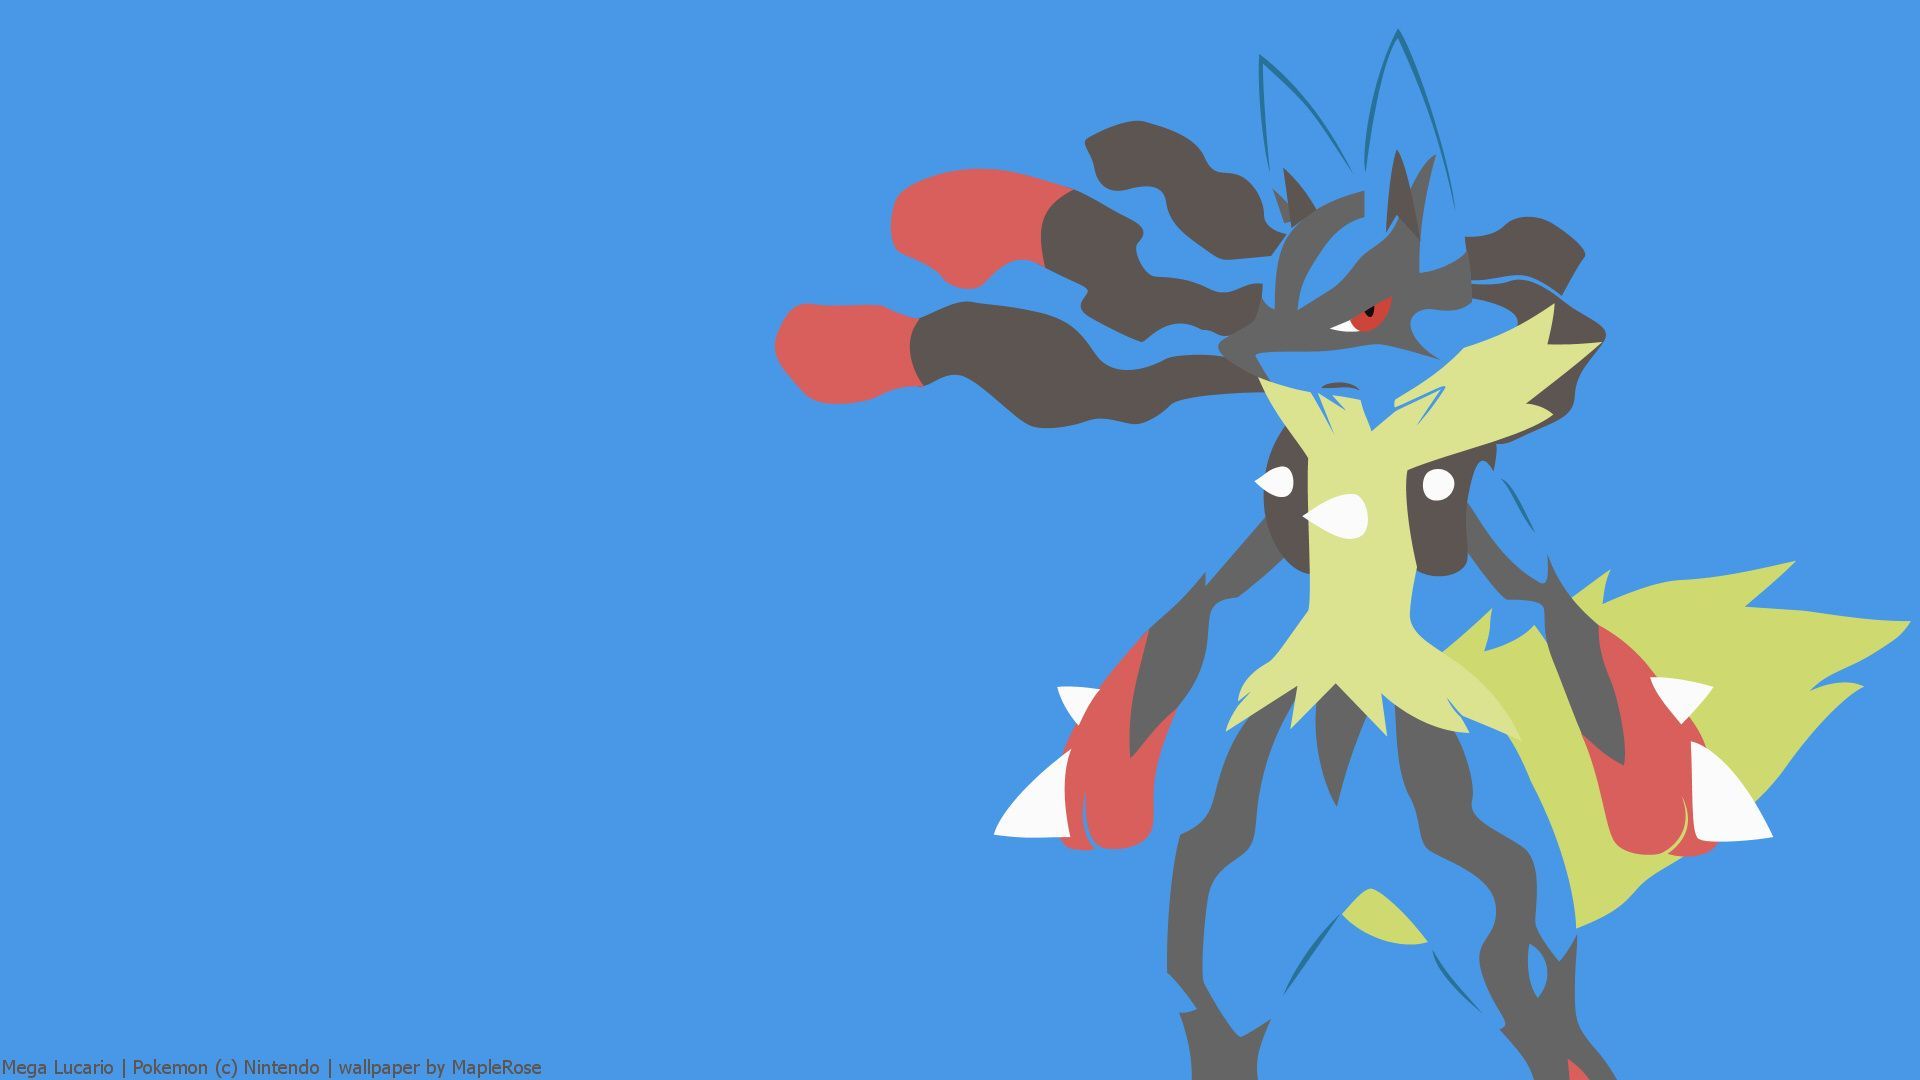 Lucario. Pokémon and Wallpaper